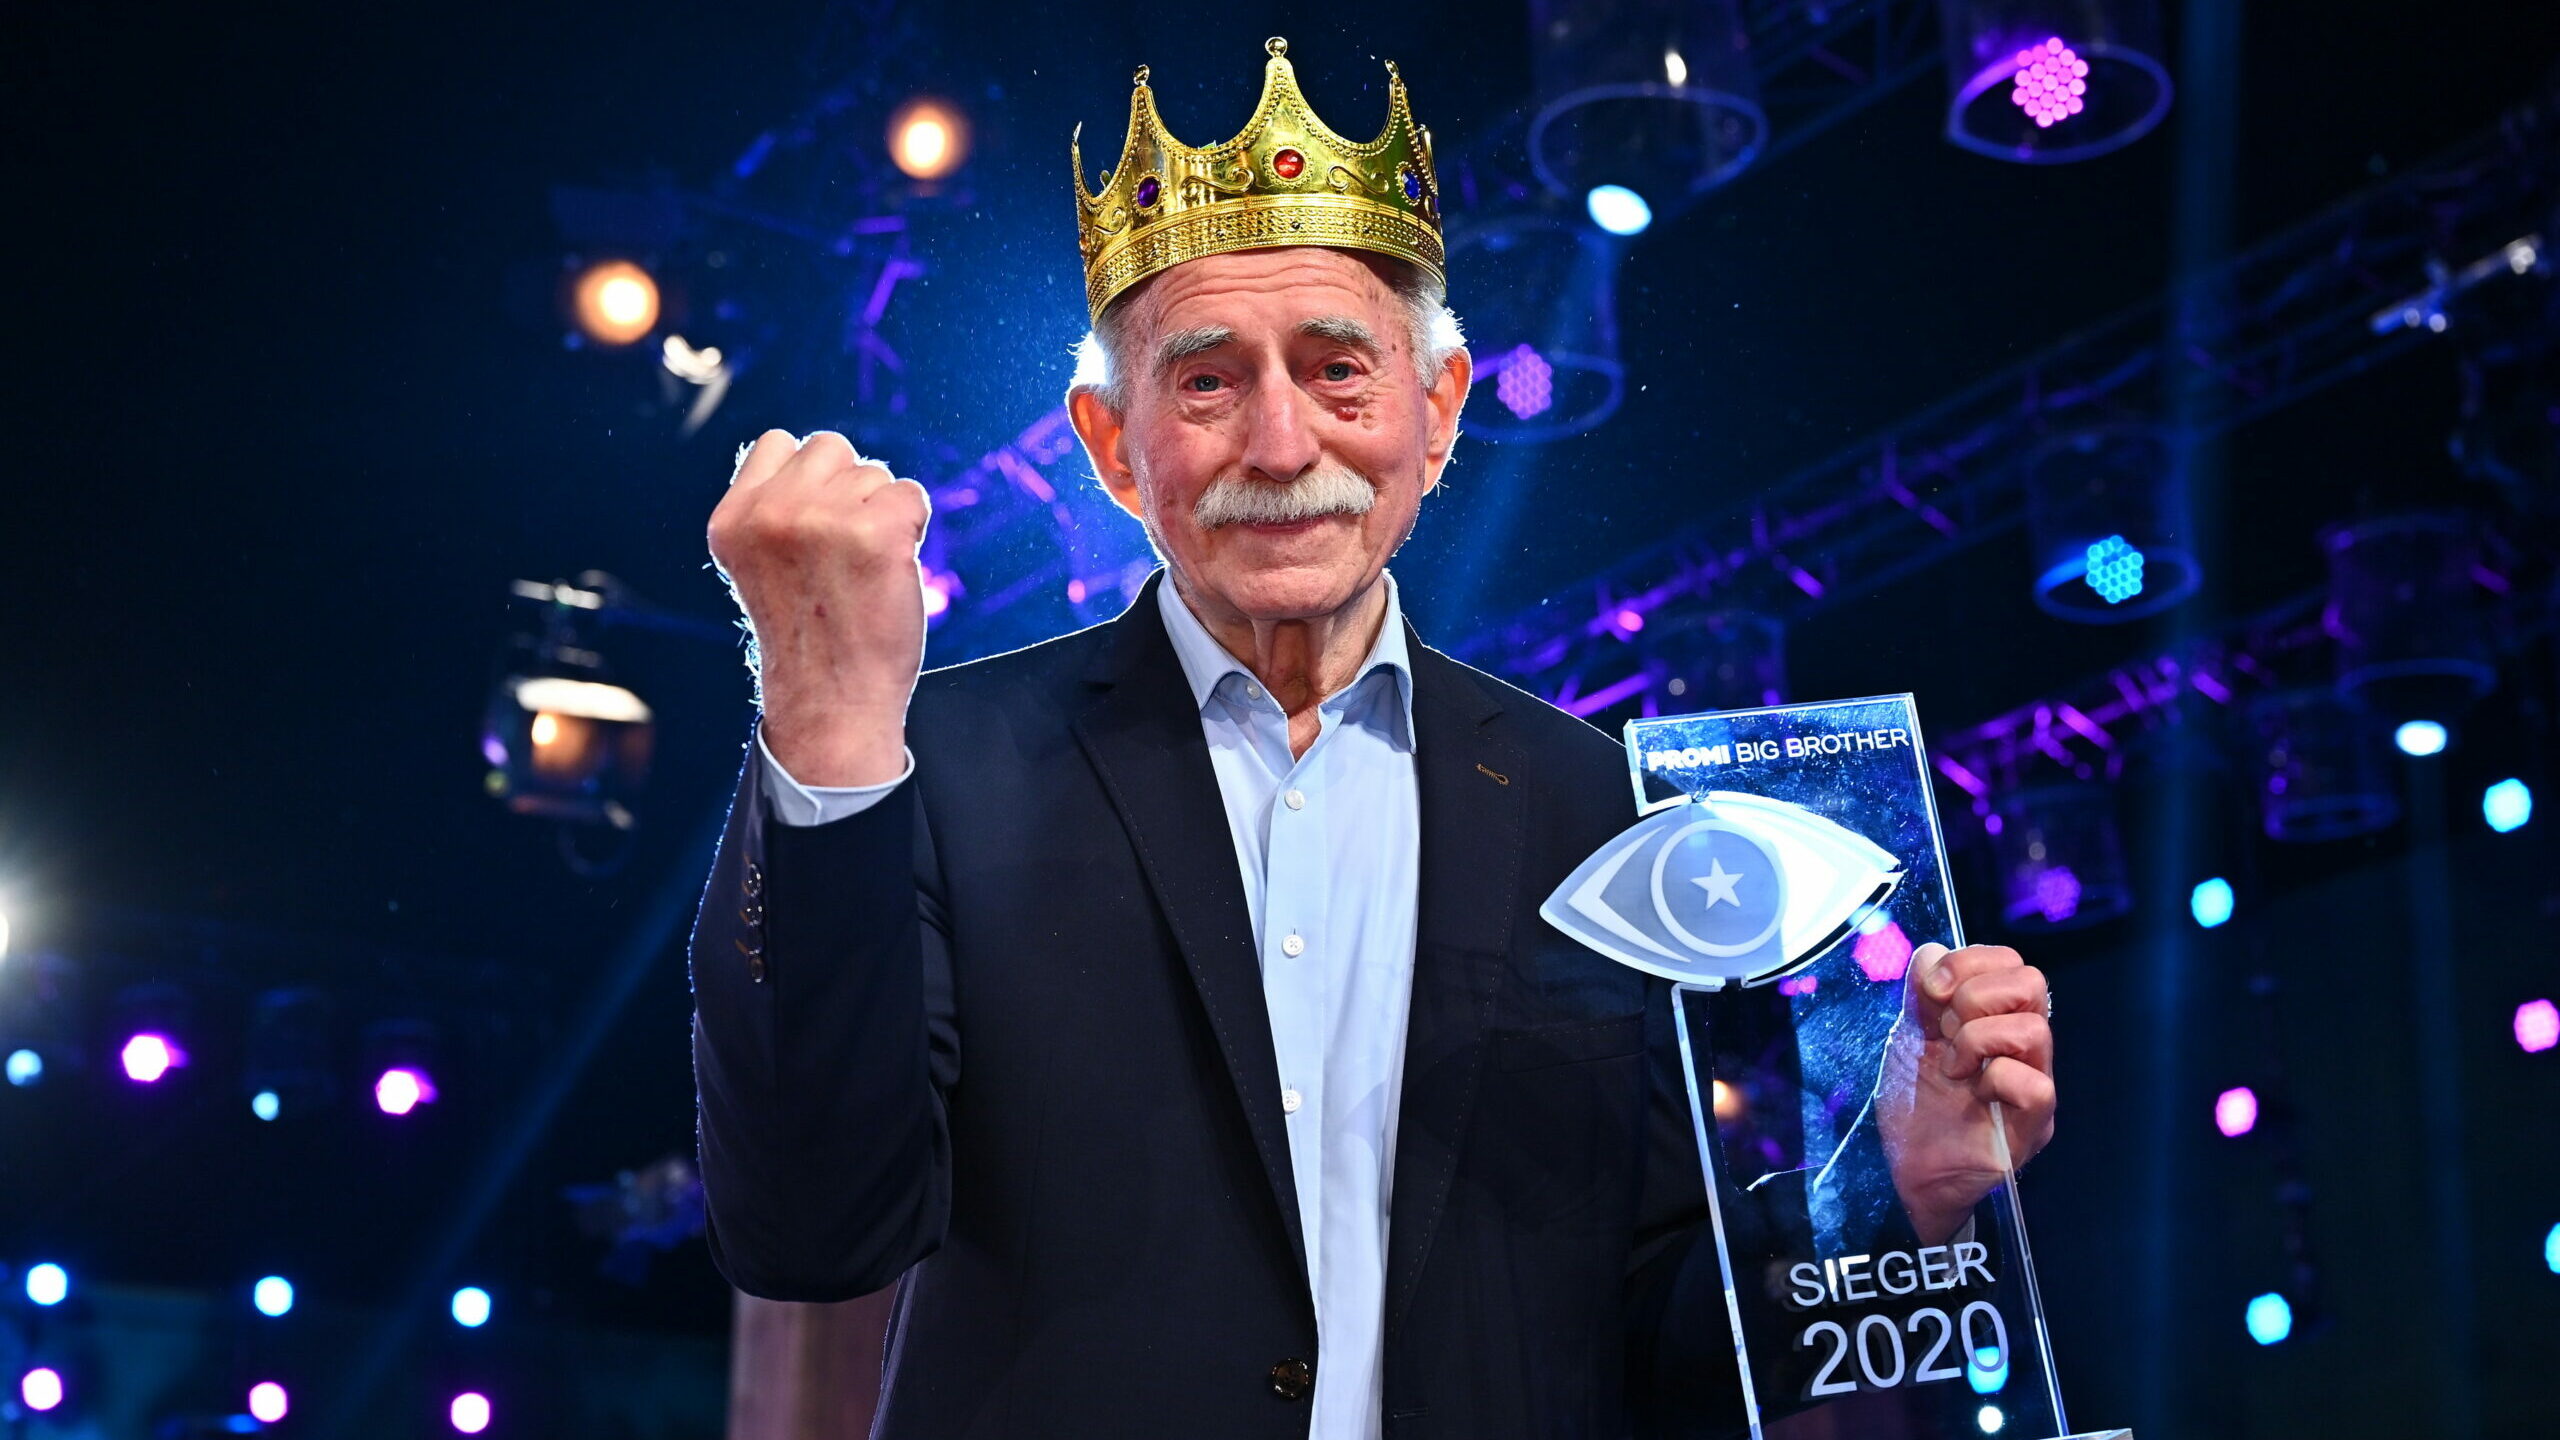 Promi Big Brother 2020 Gewinner: Werner Hansch ist der Sieger von Staffel 8 5